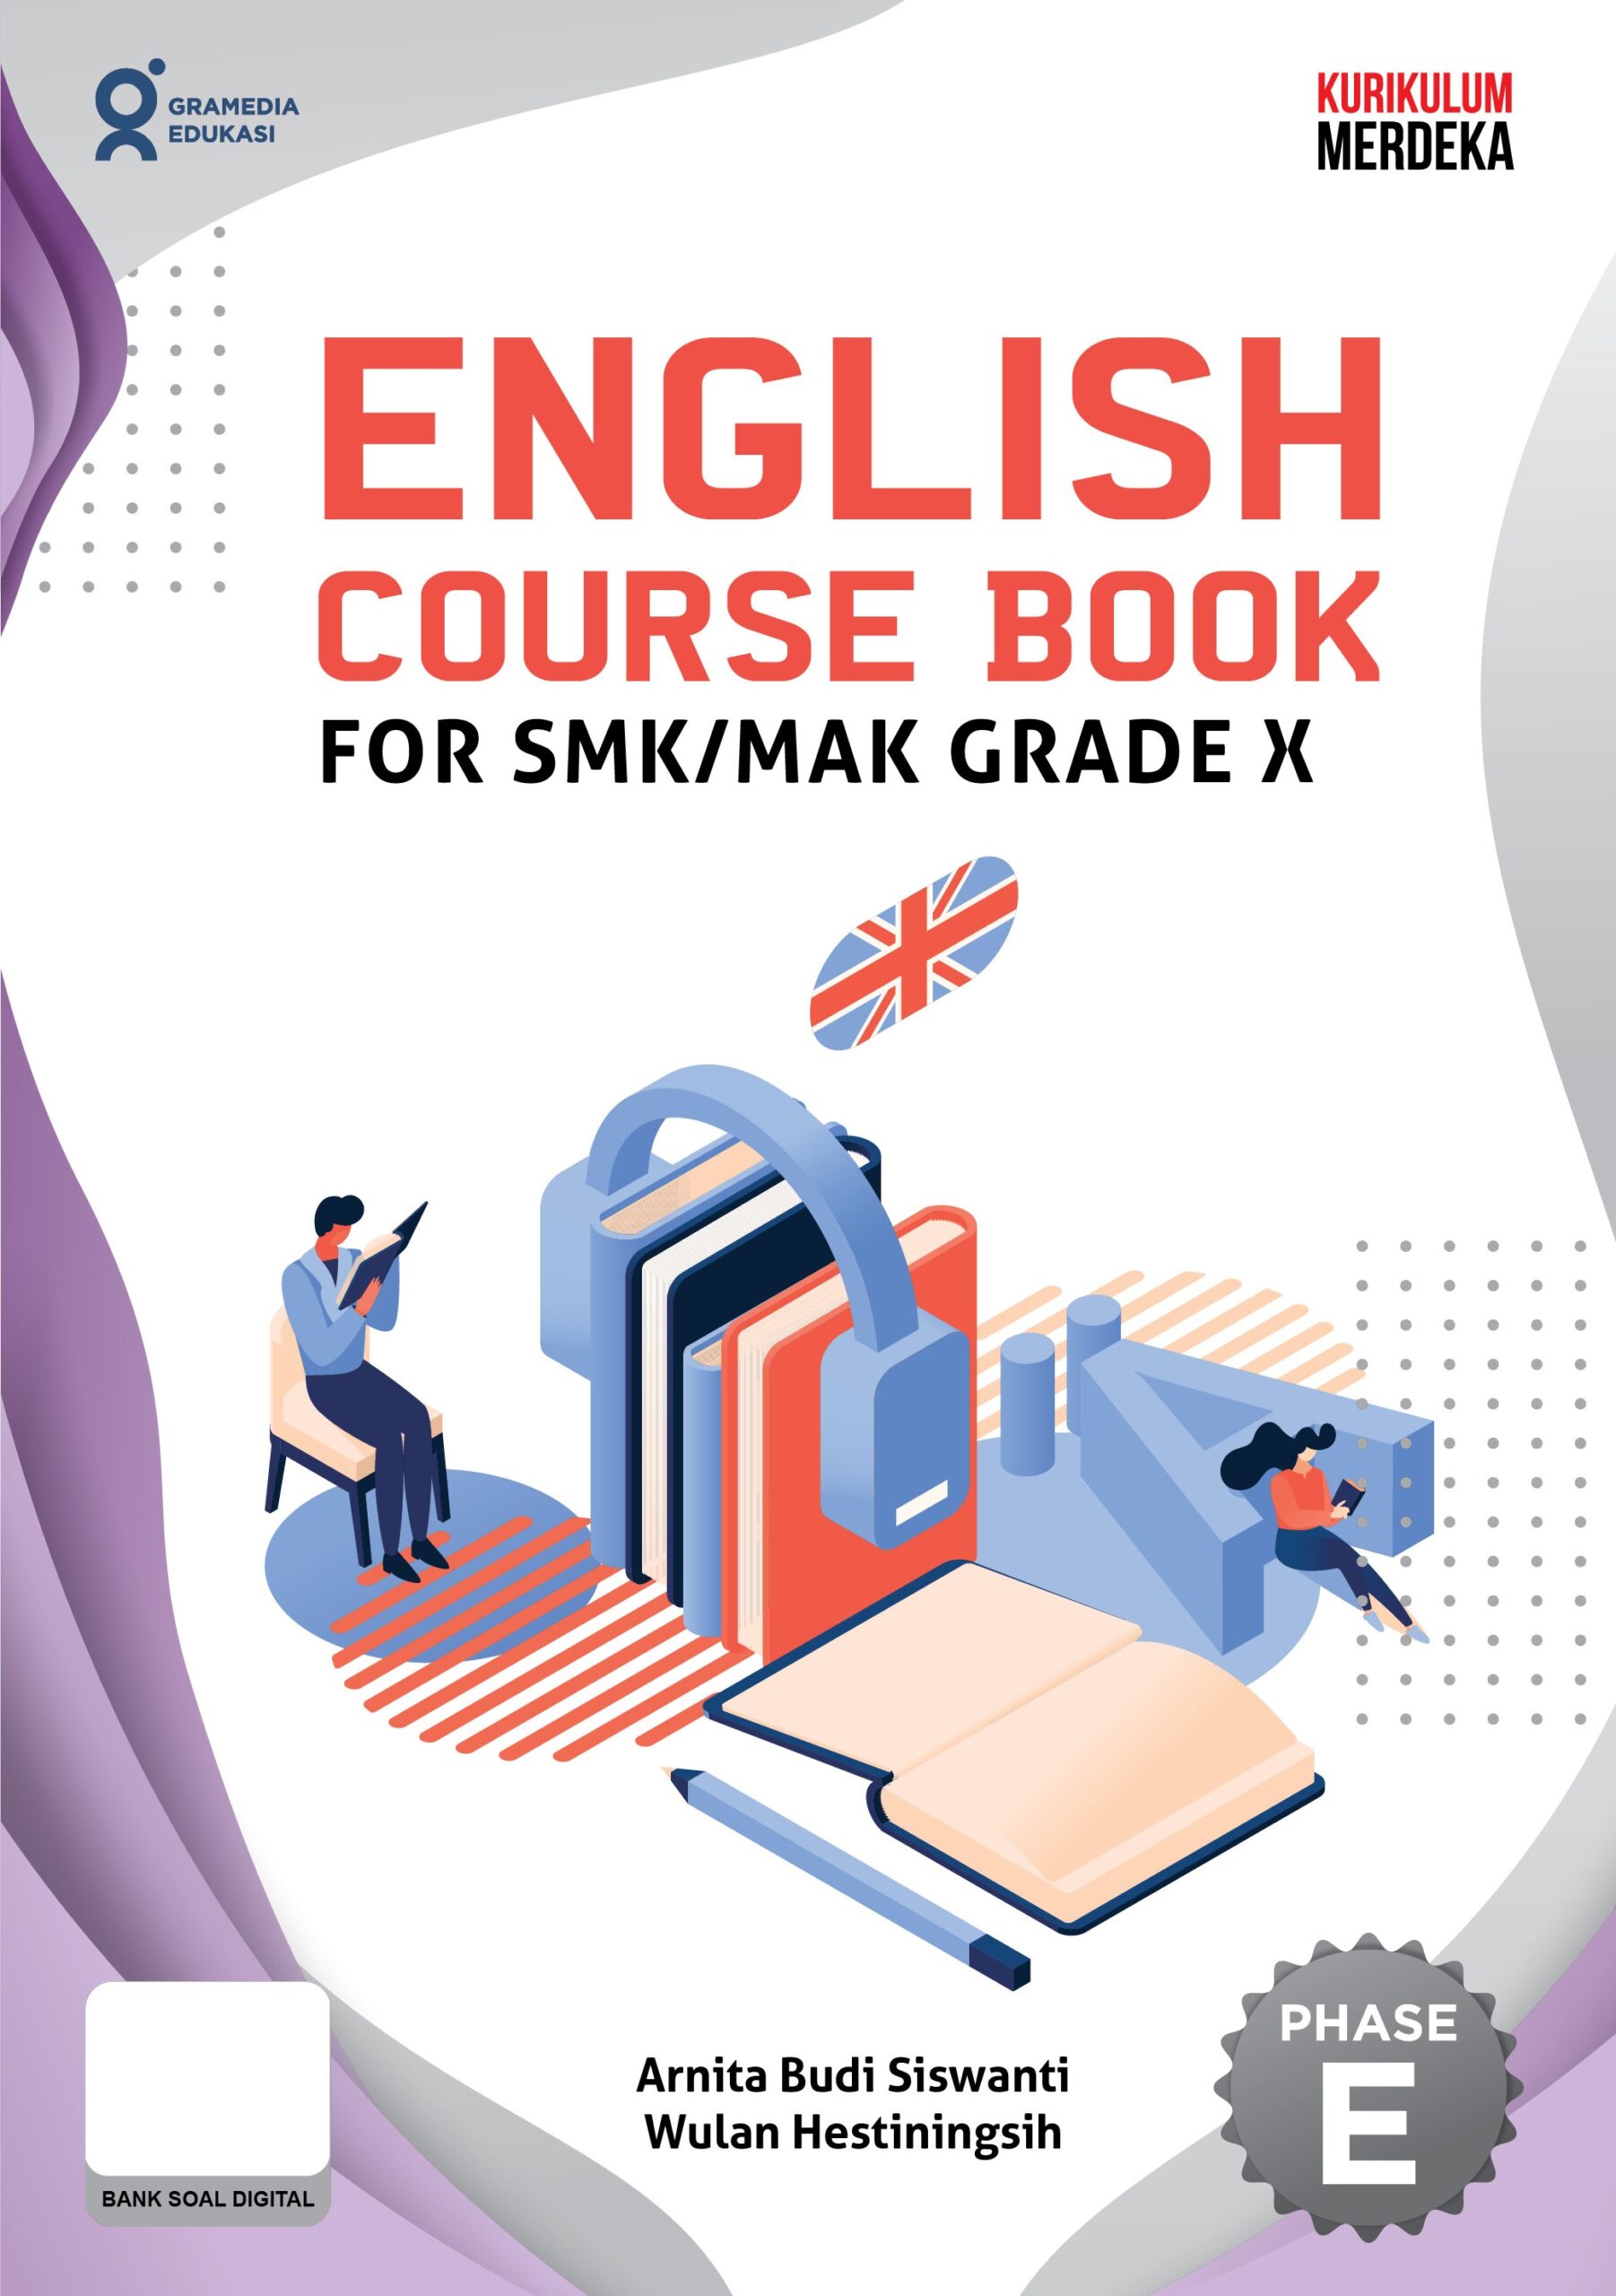 English course book for SMK/MAK grade X